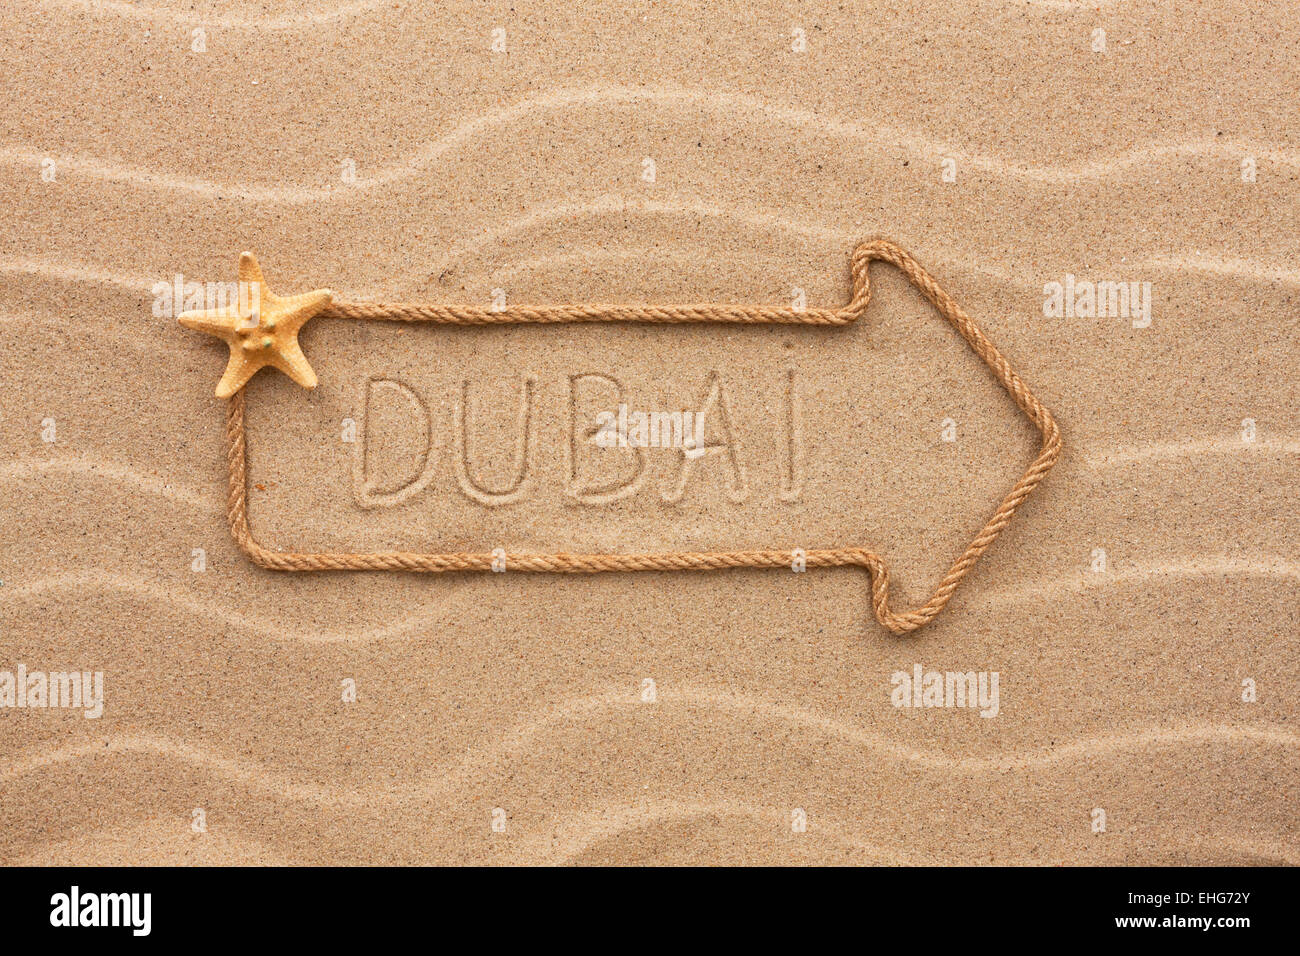 Freccia fatta di corda e conchiglie di mare con la parola Dubai sulla sabbia, come sfondo Foto Stock